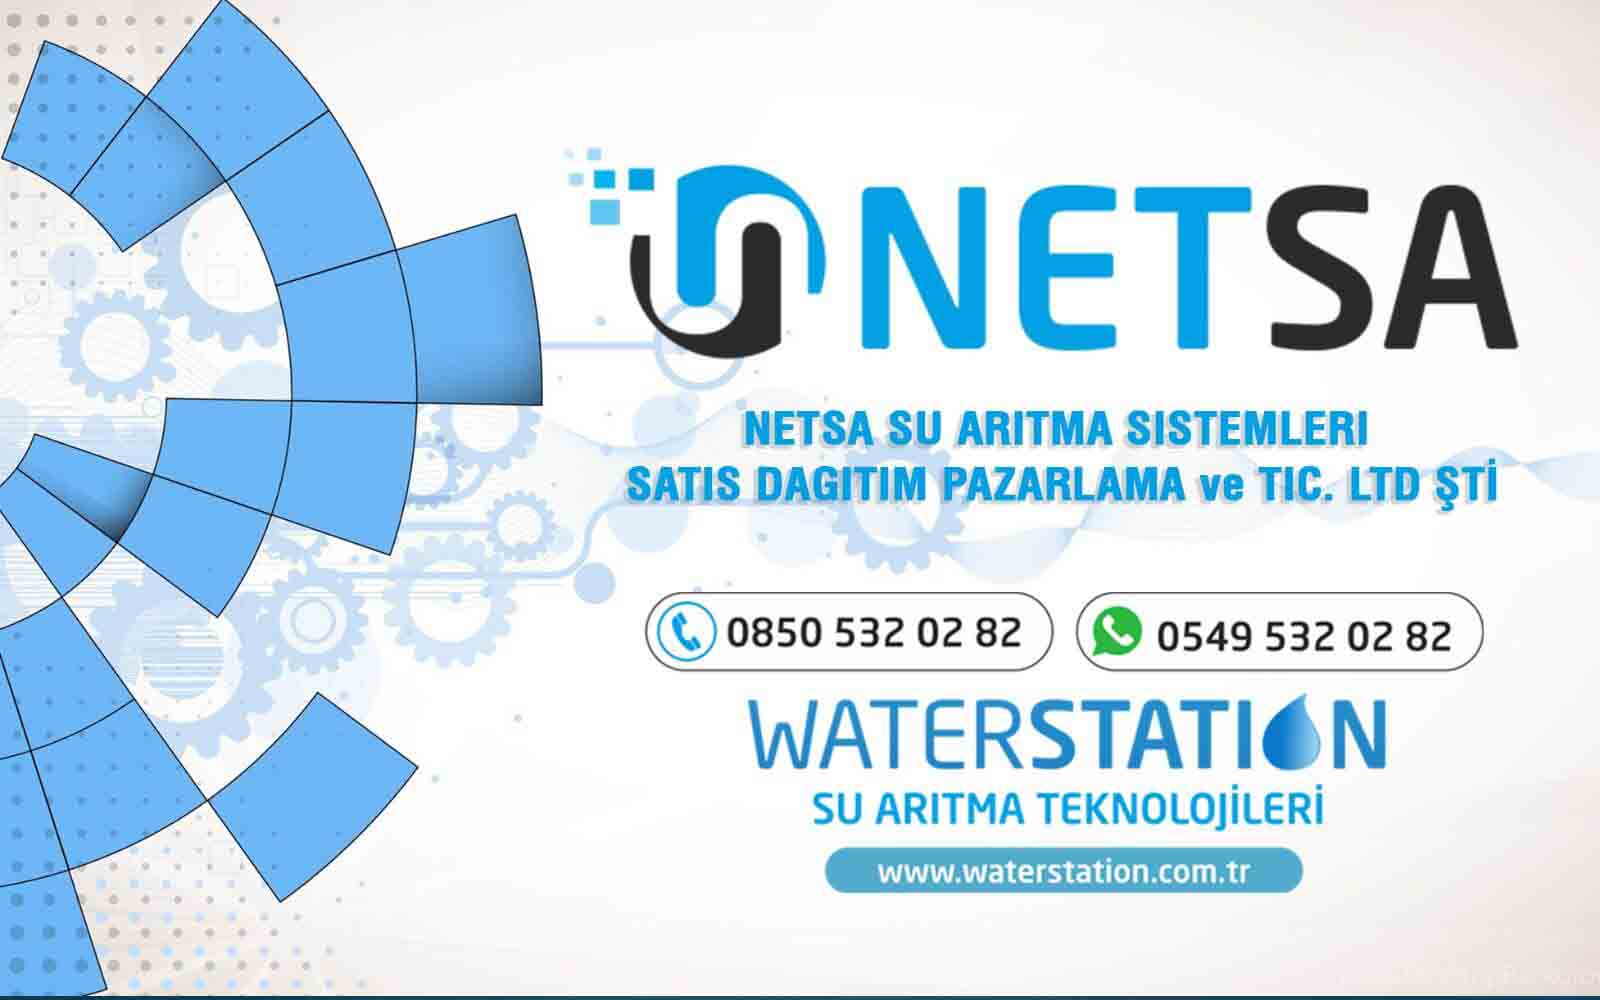 NETSA Su Arıtma Sistemleri Satış Dağıtım Pazarlama ve TİC. LTD ŞTİ